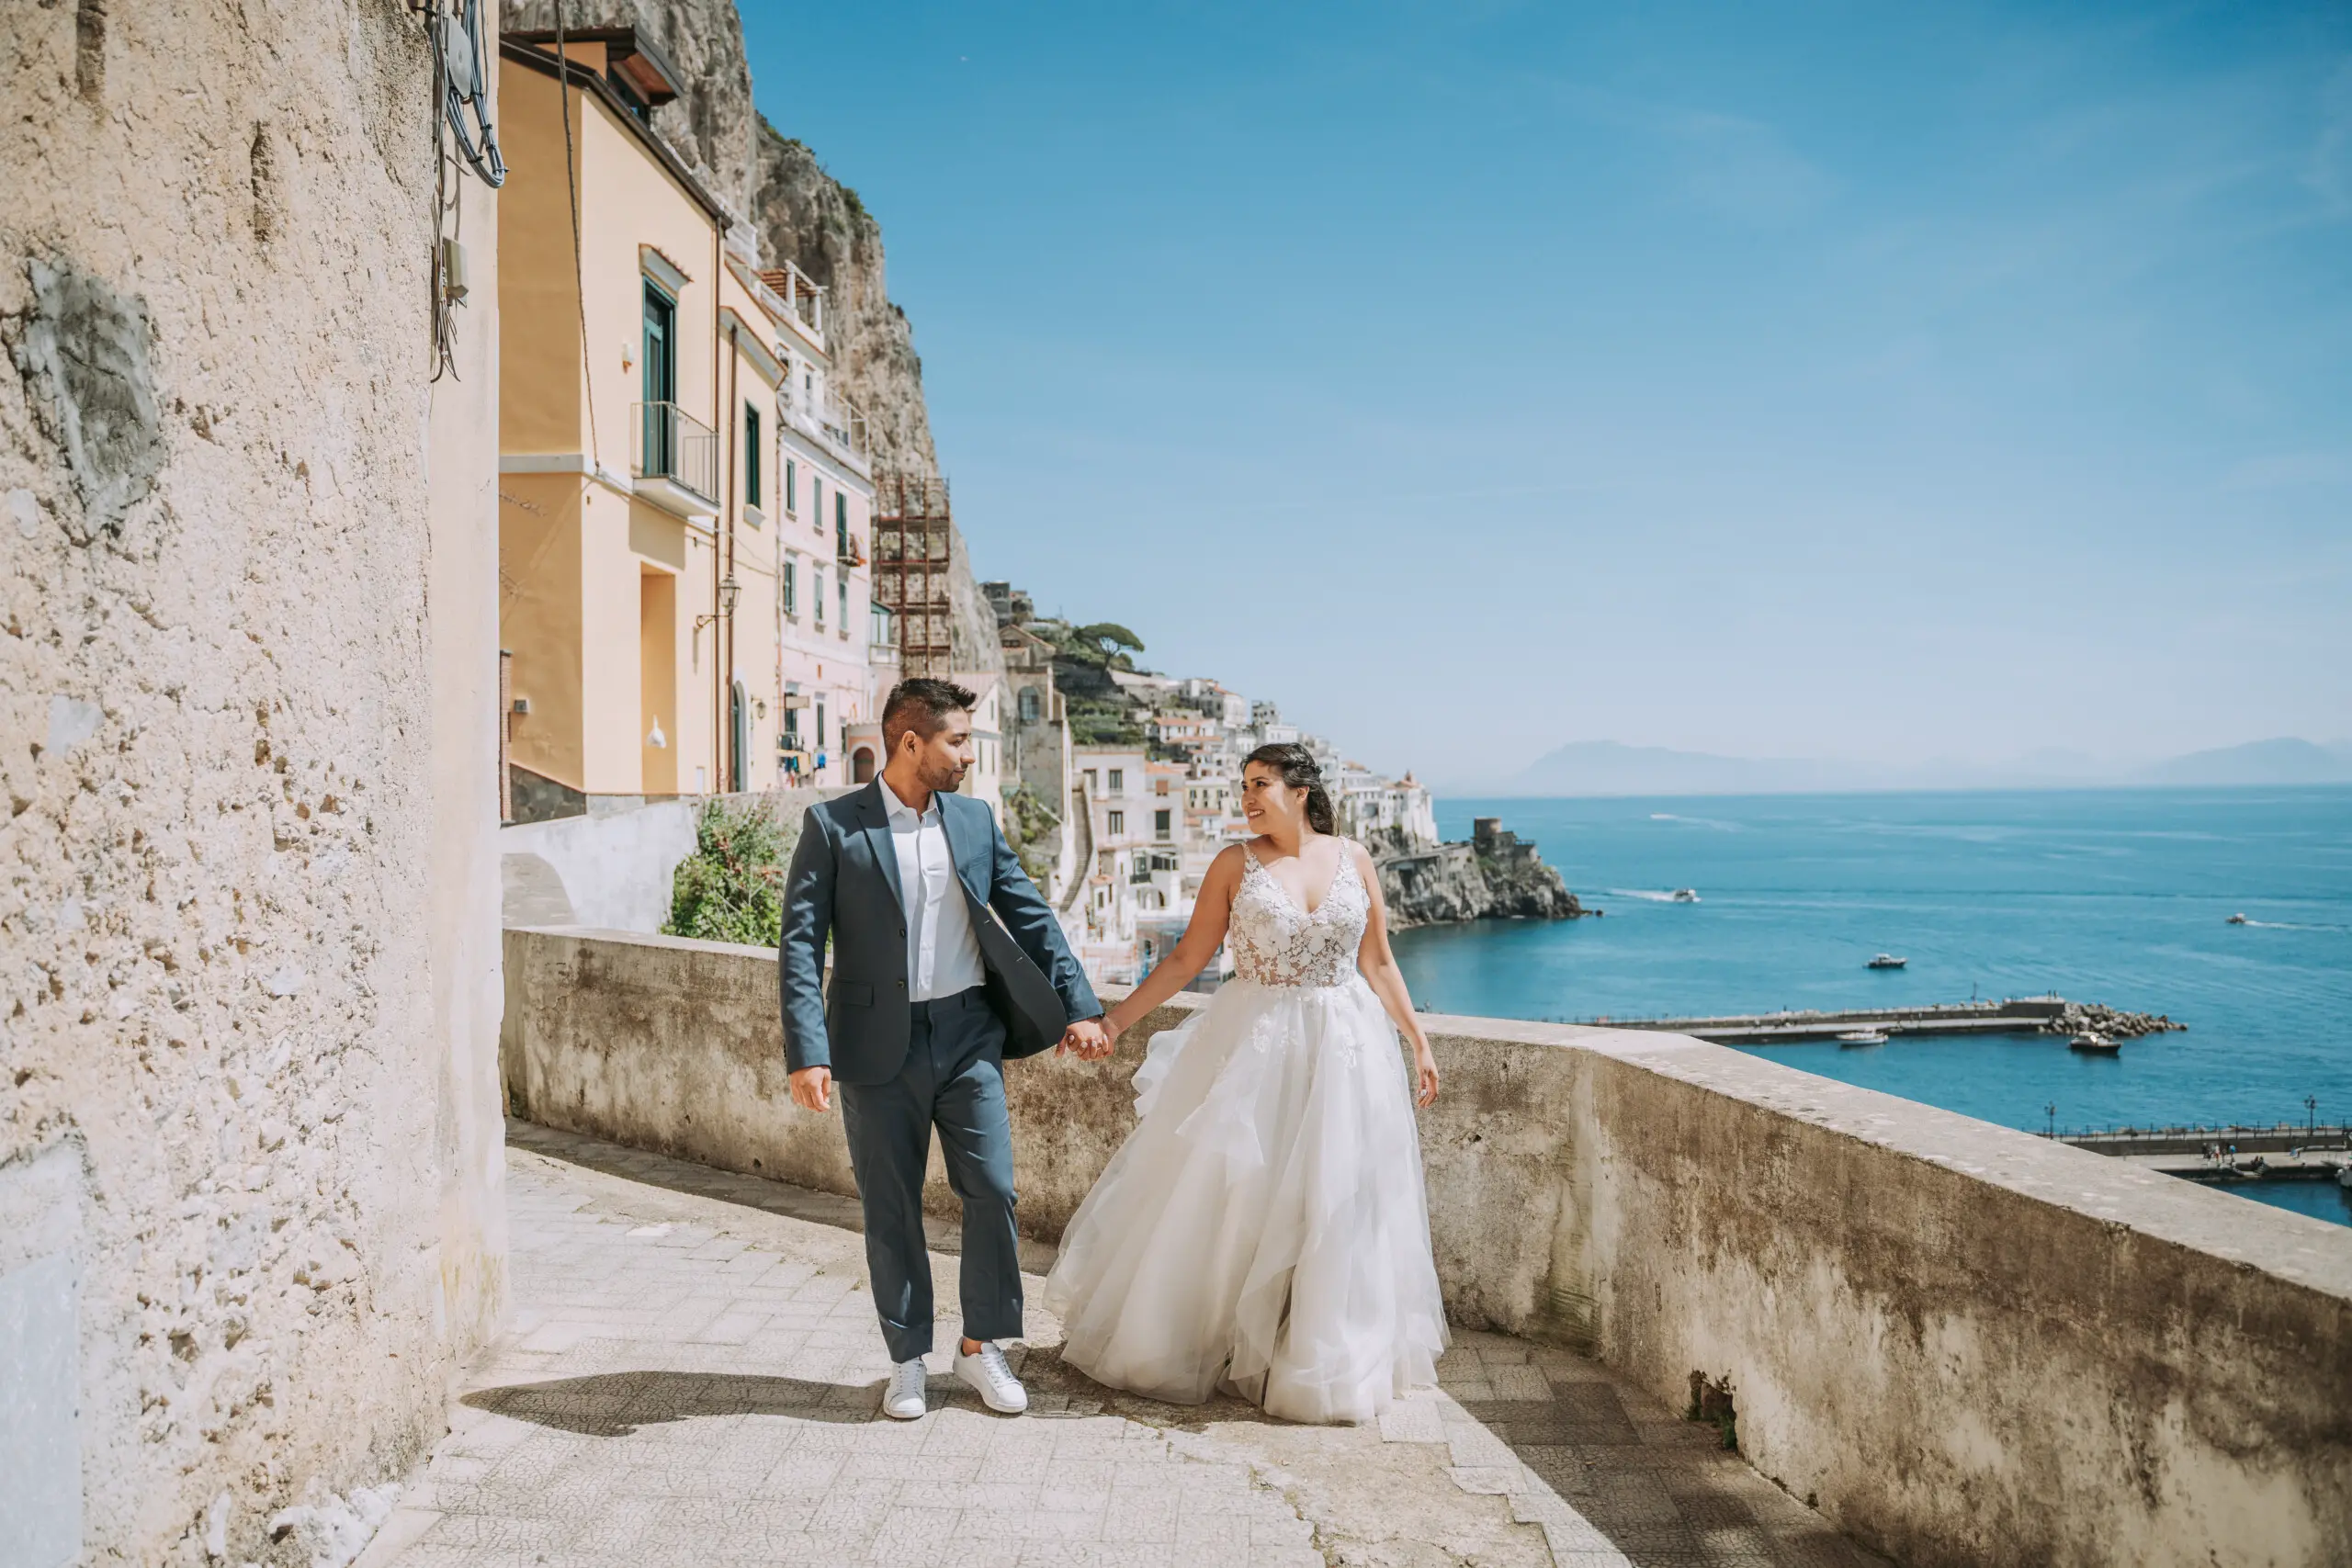 Wedding photshoot by Antonio, Localgrapher on the Amalfi Coast